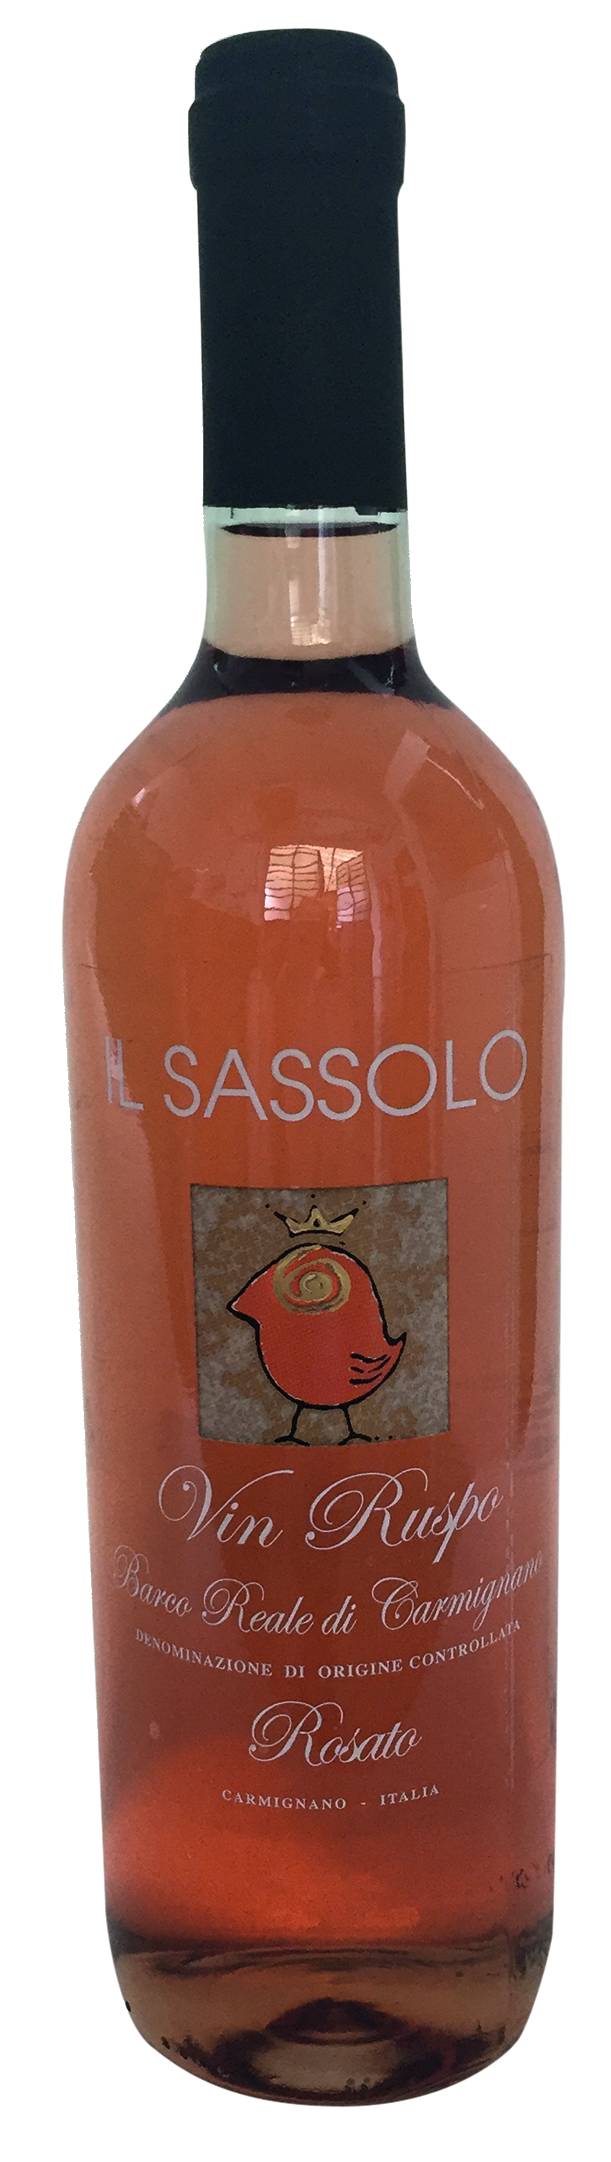 Vin ruspo - rosato di Carmignano DOC - Il Sassolo